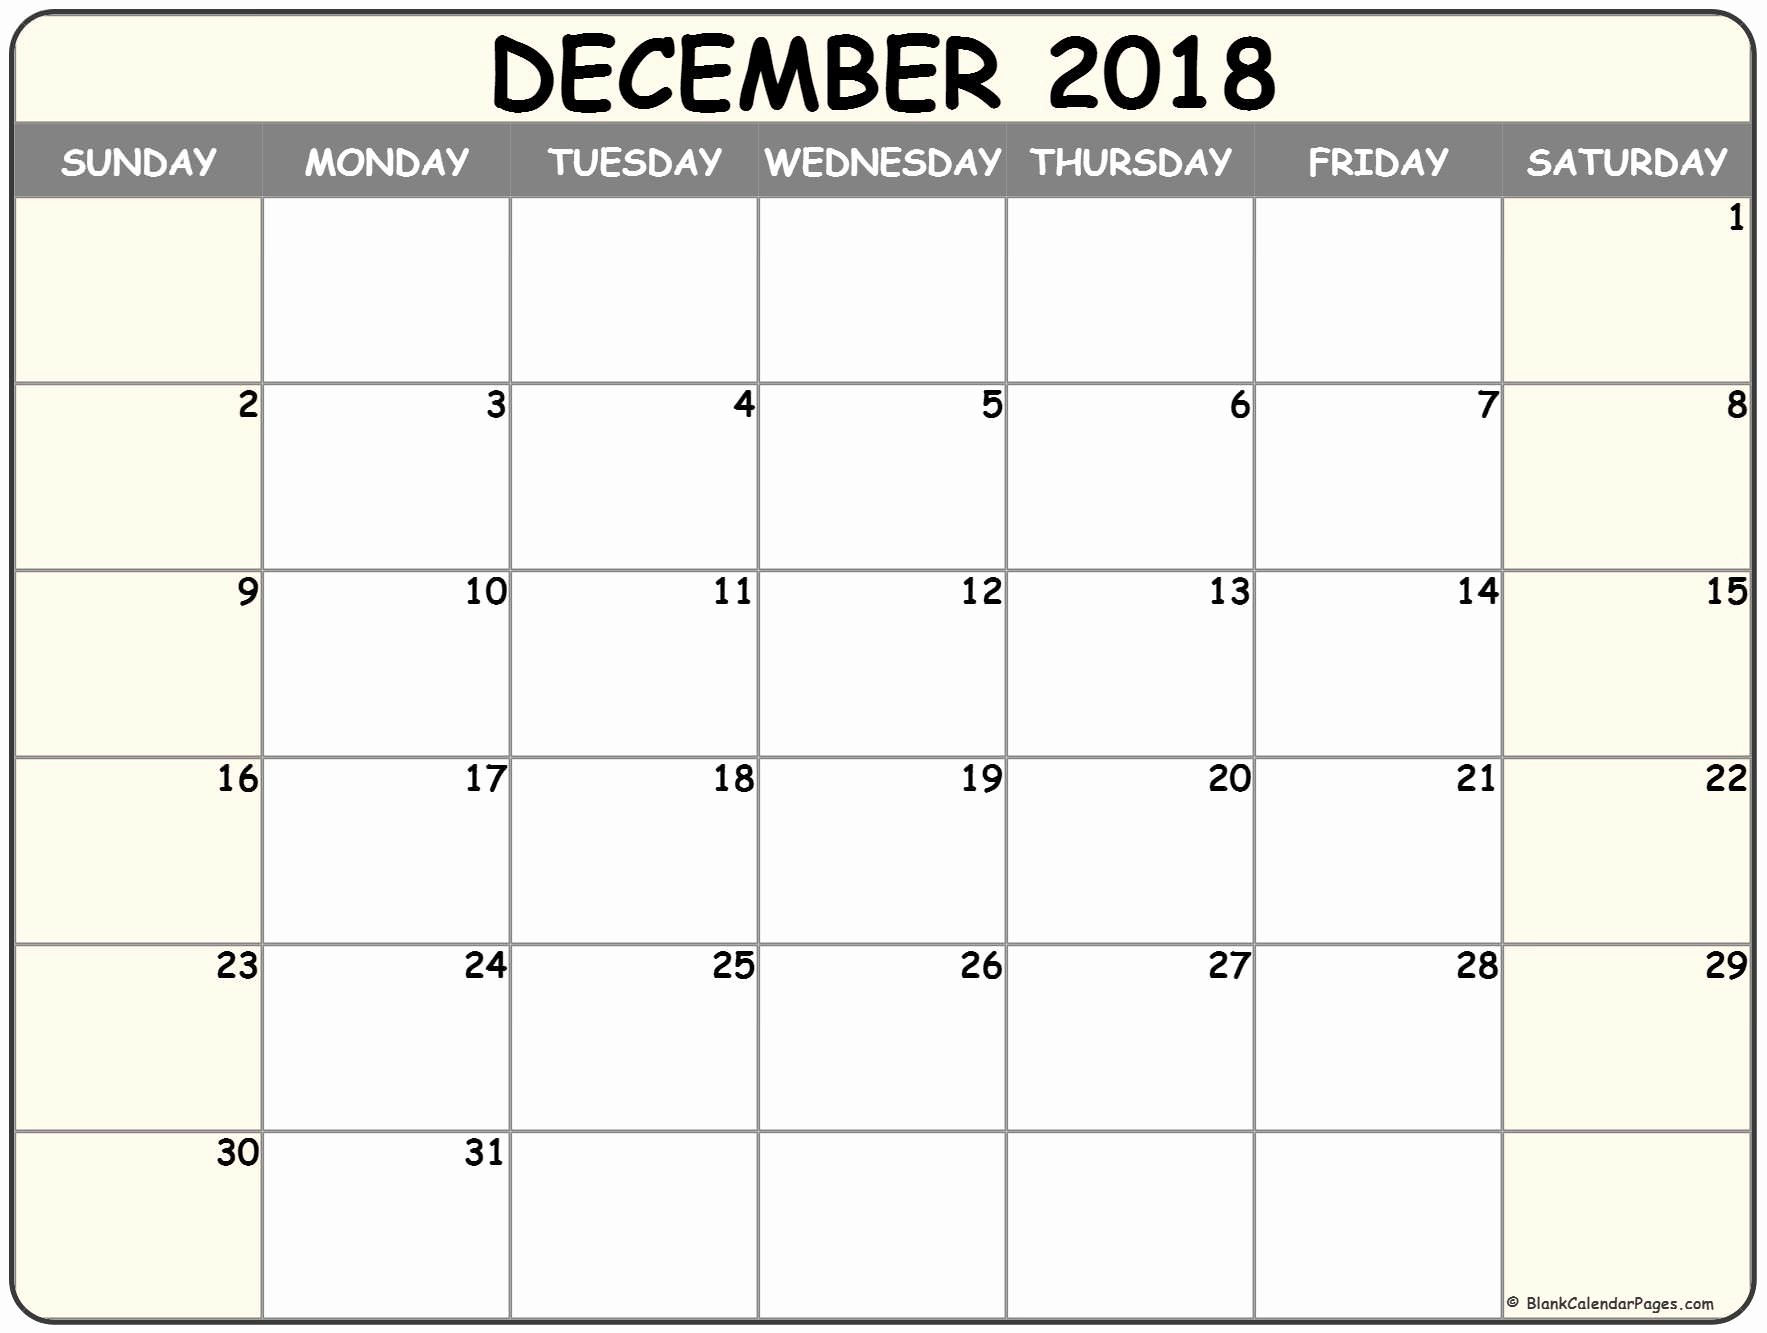 Blank Calendar Template December 2018 Best Of December 2018 Blank Calendar Collection